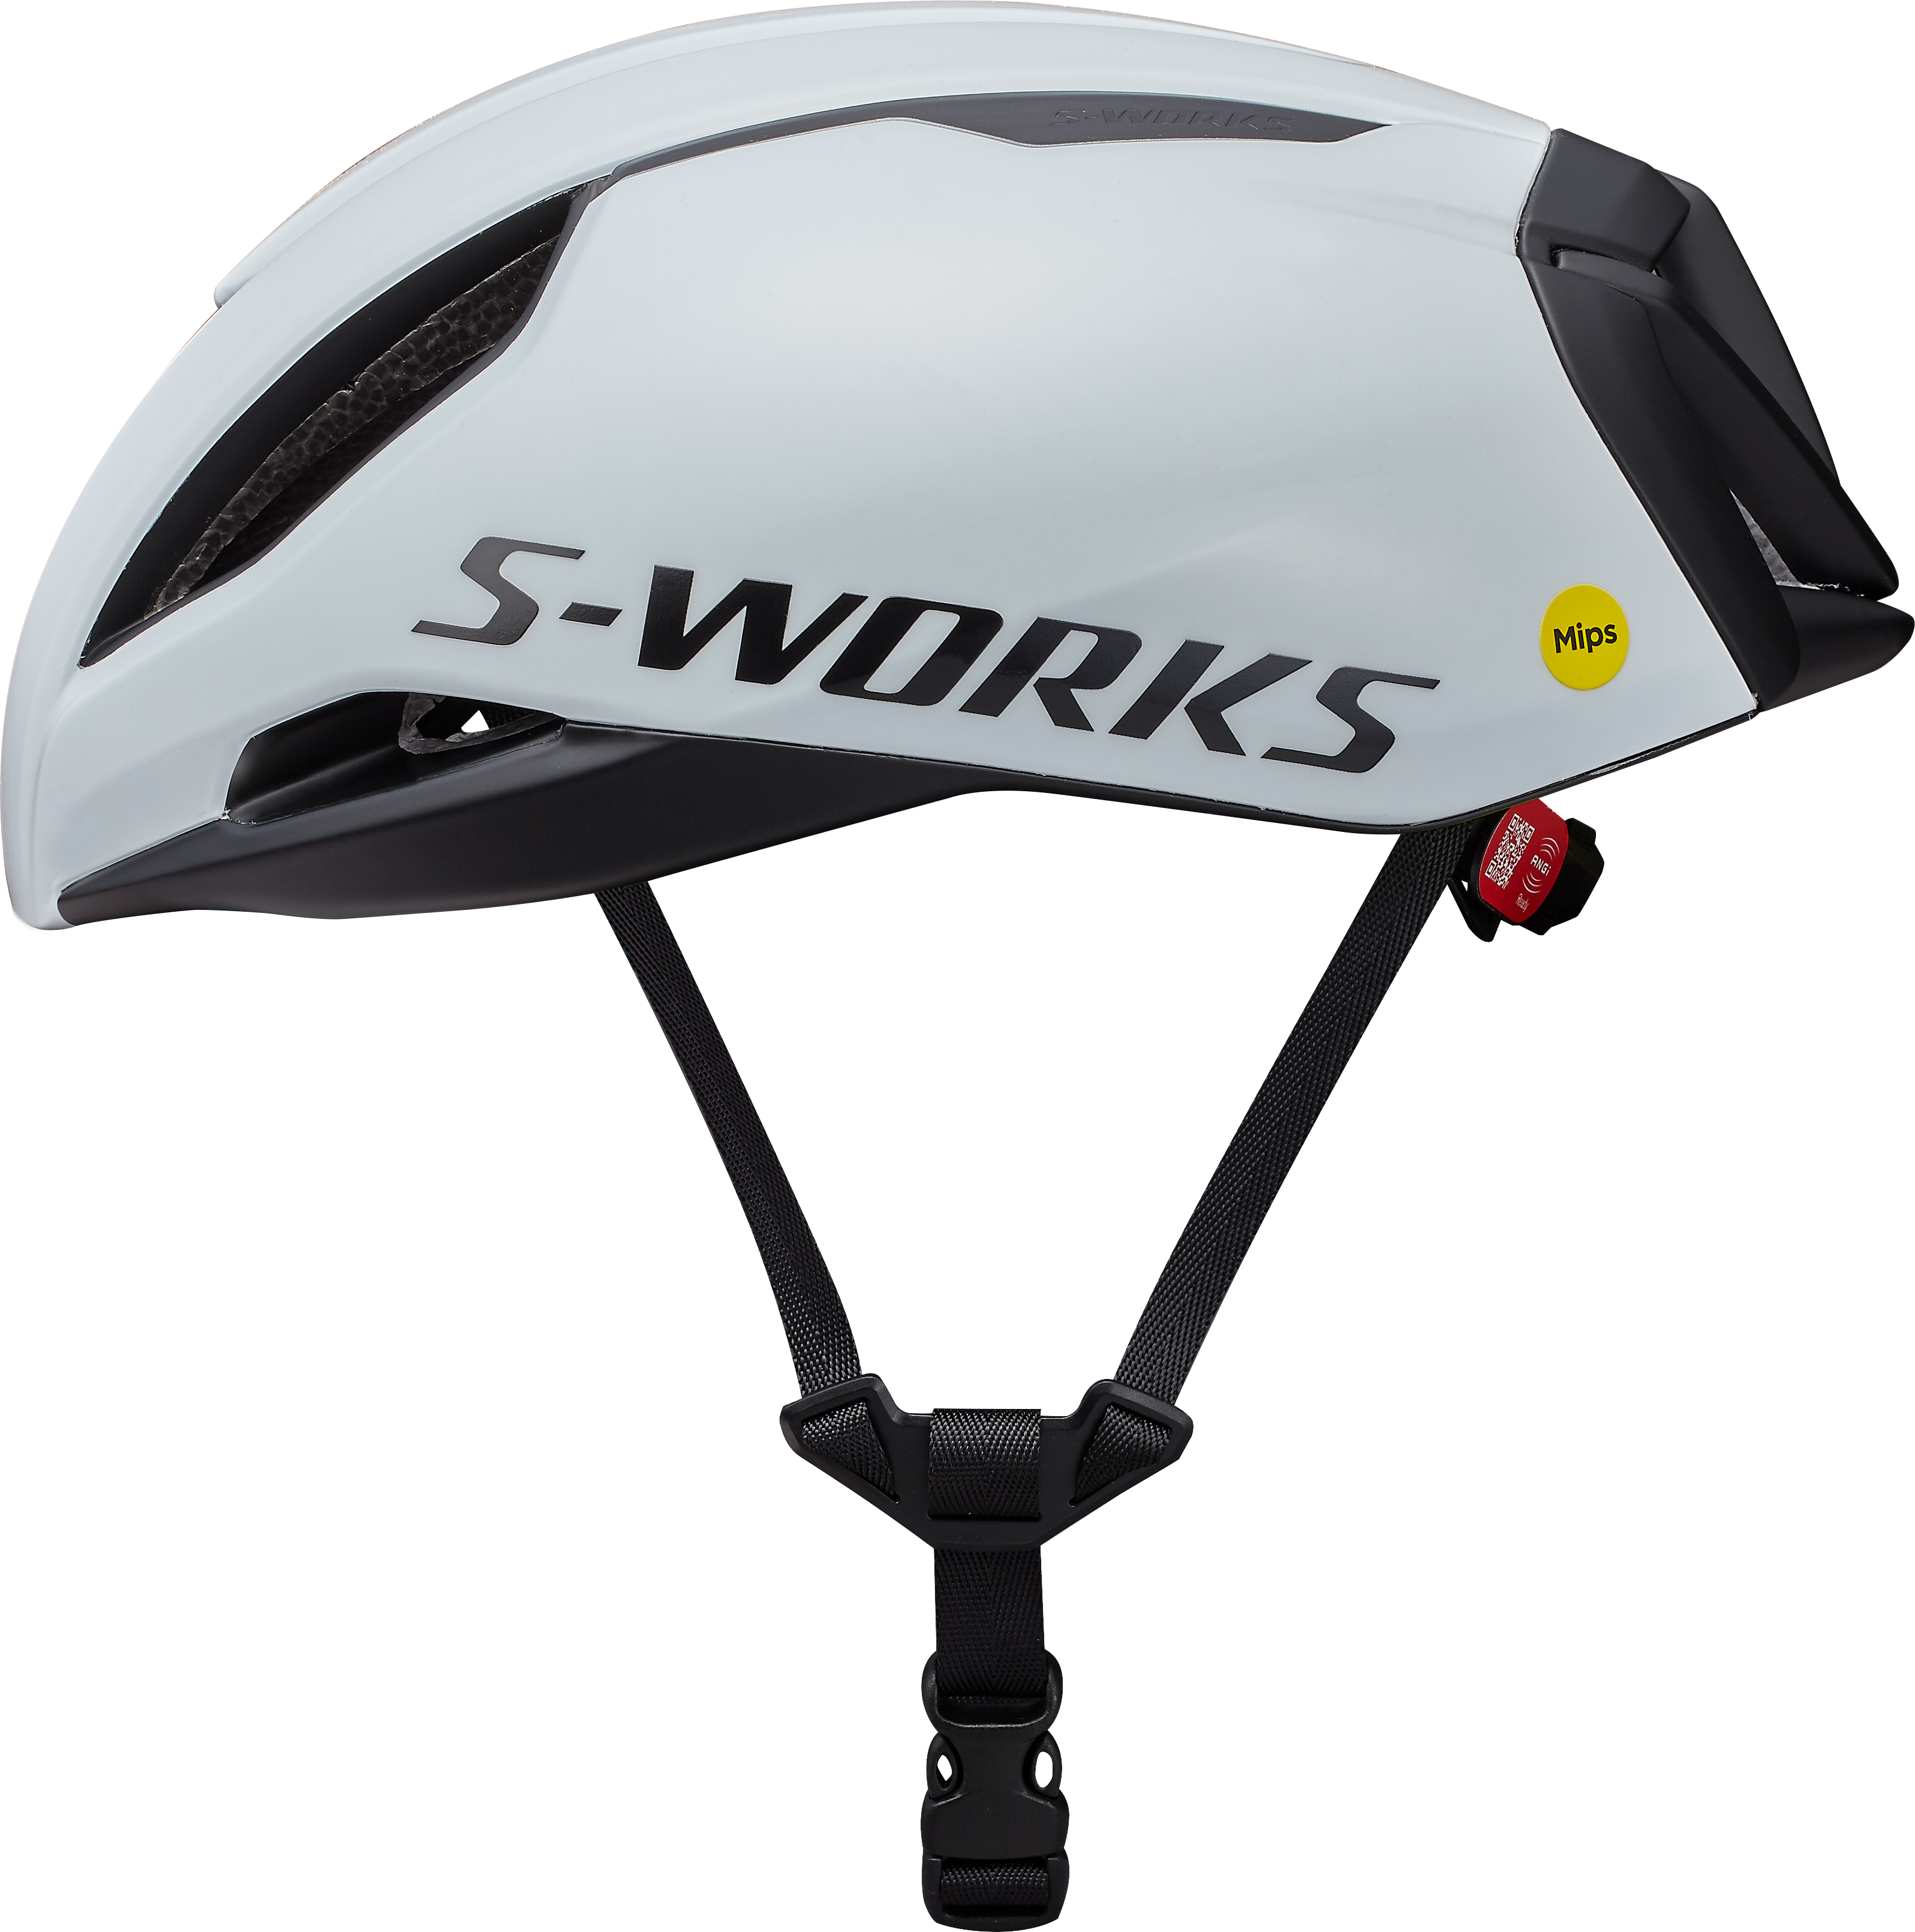 スペシャライズドのヘルメット S-WORKS EVADE-